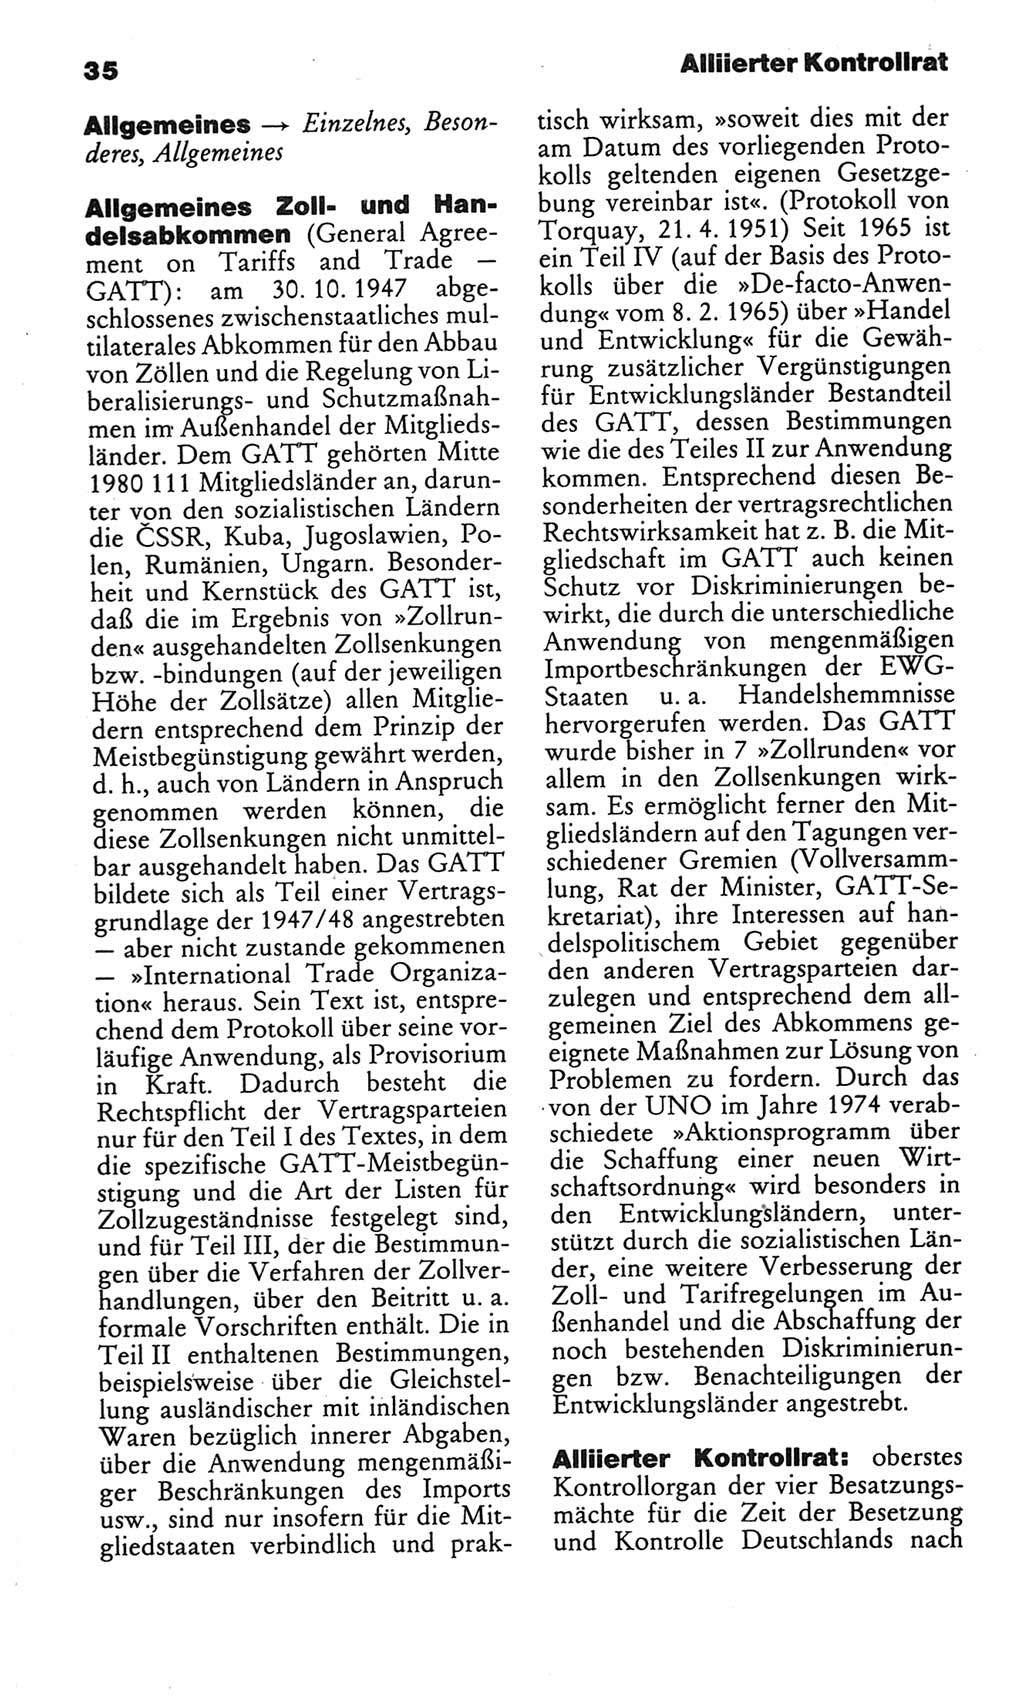 Kleines politisches Wörterbuch [Deutsche Demokratische Republik (DDR)] 1986, Seite 35 (Kl. pol. Wb. DDR 1986, S. 35)